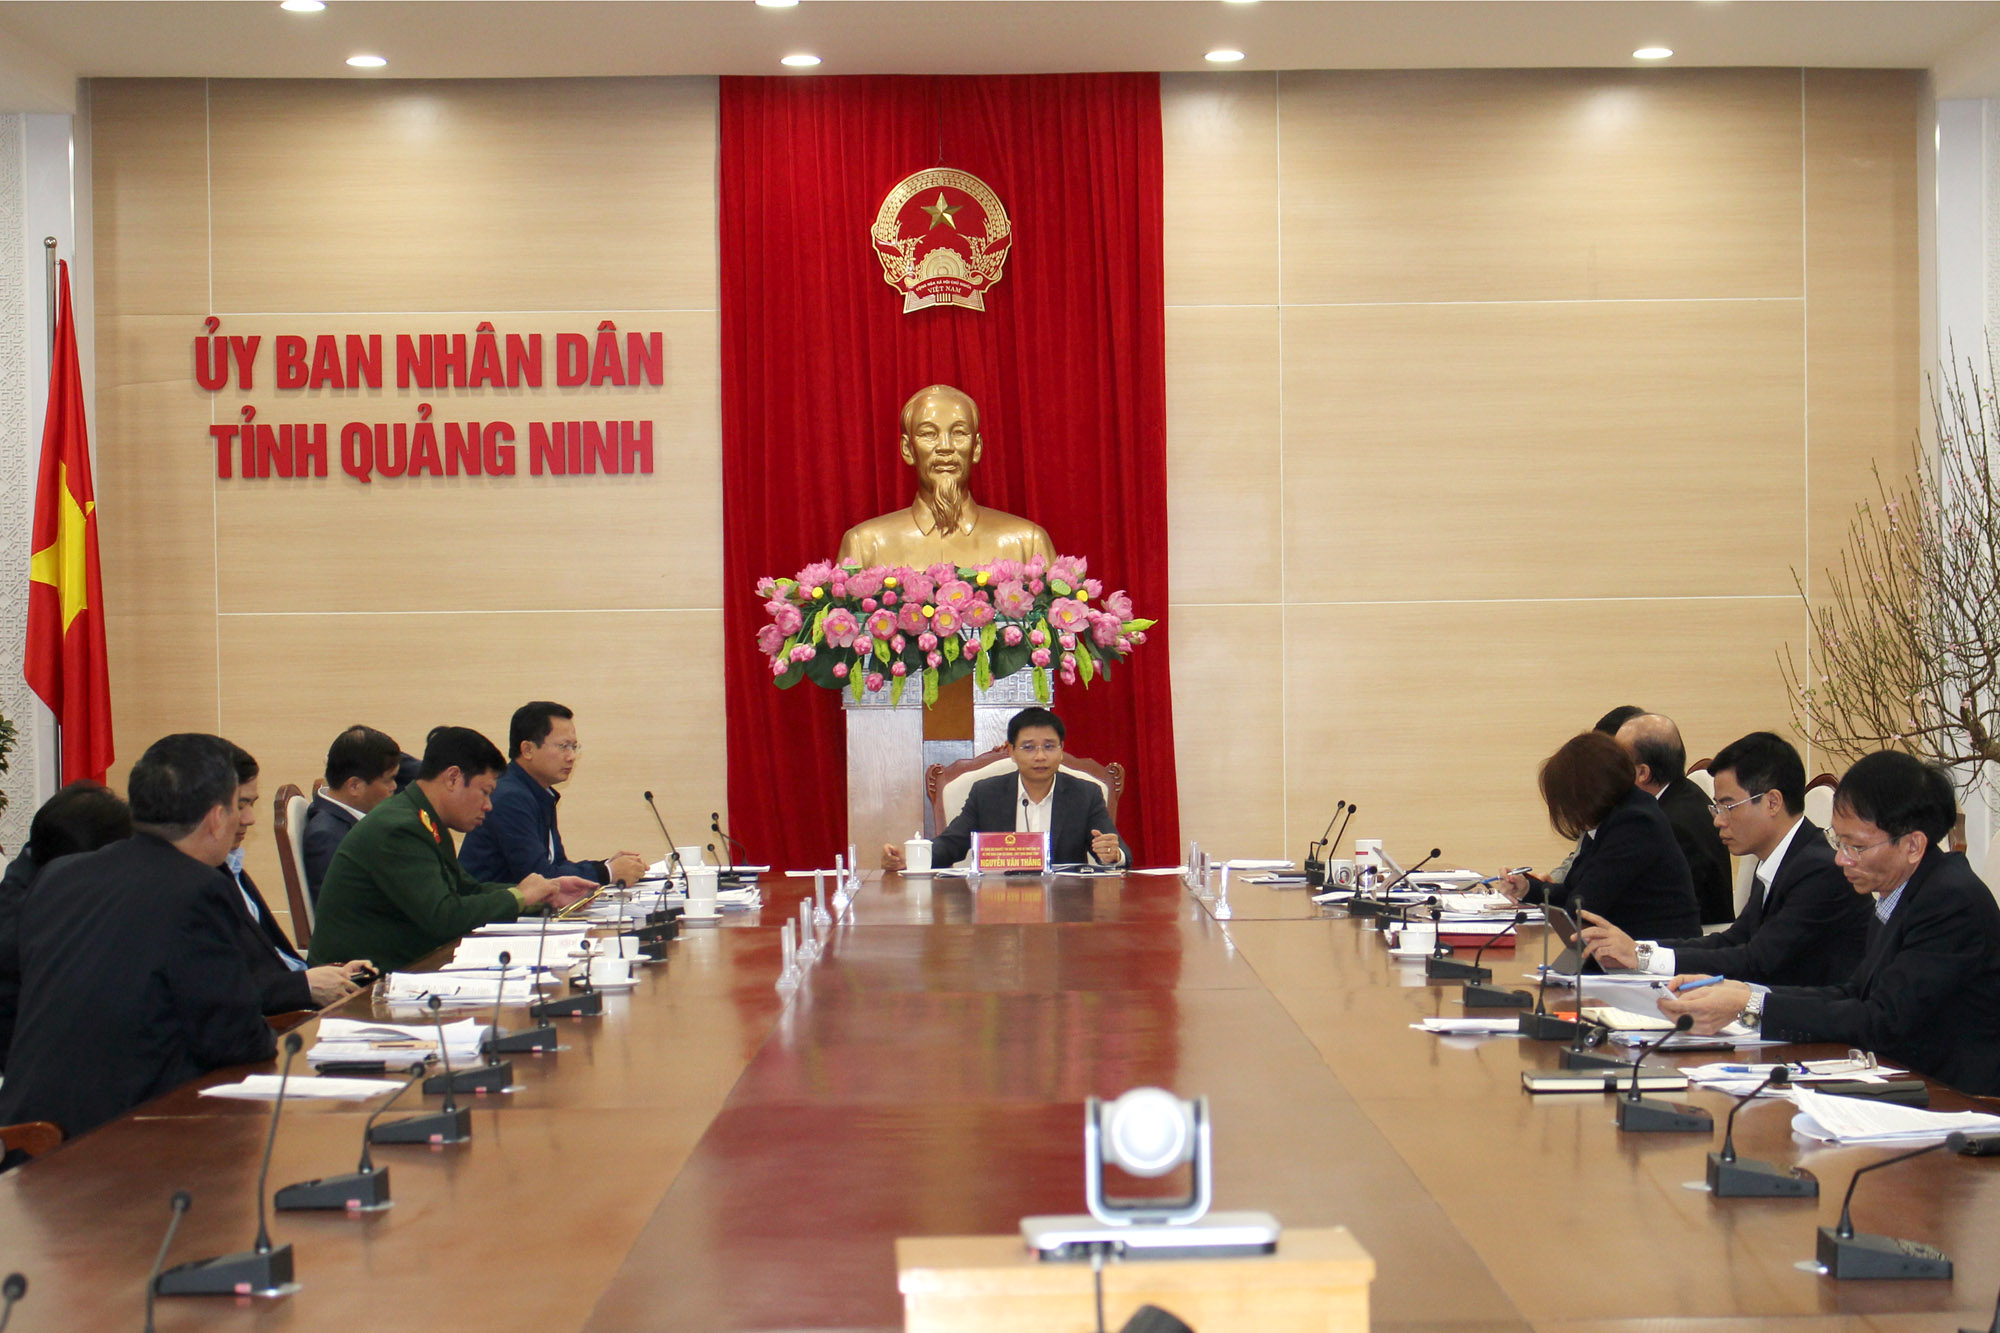 Đồng chí Nguyễn Văn Thắng, Bí thư Ban Cán sự Đảng, Chủ tịch UBND tỉnh, chủ trì buổi giao ban.